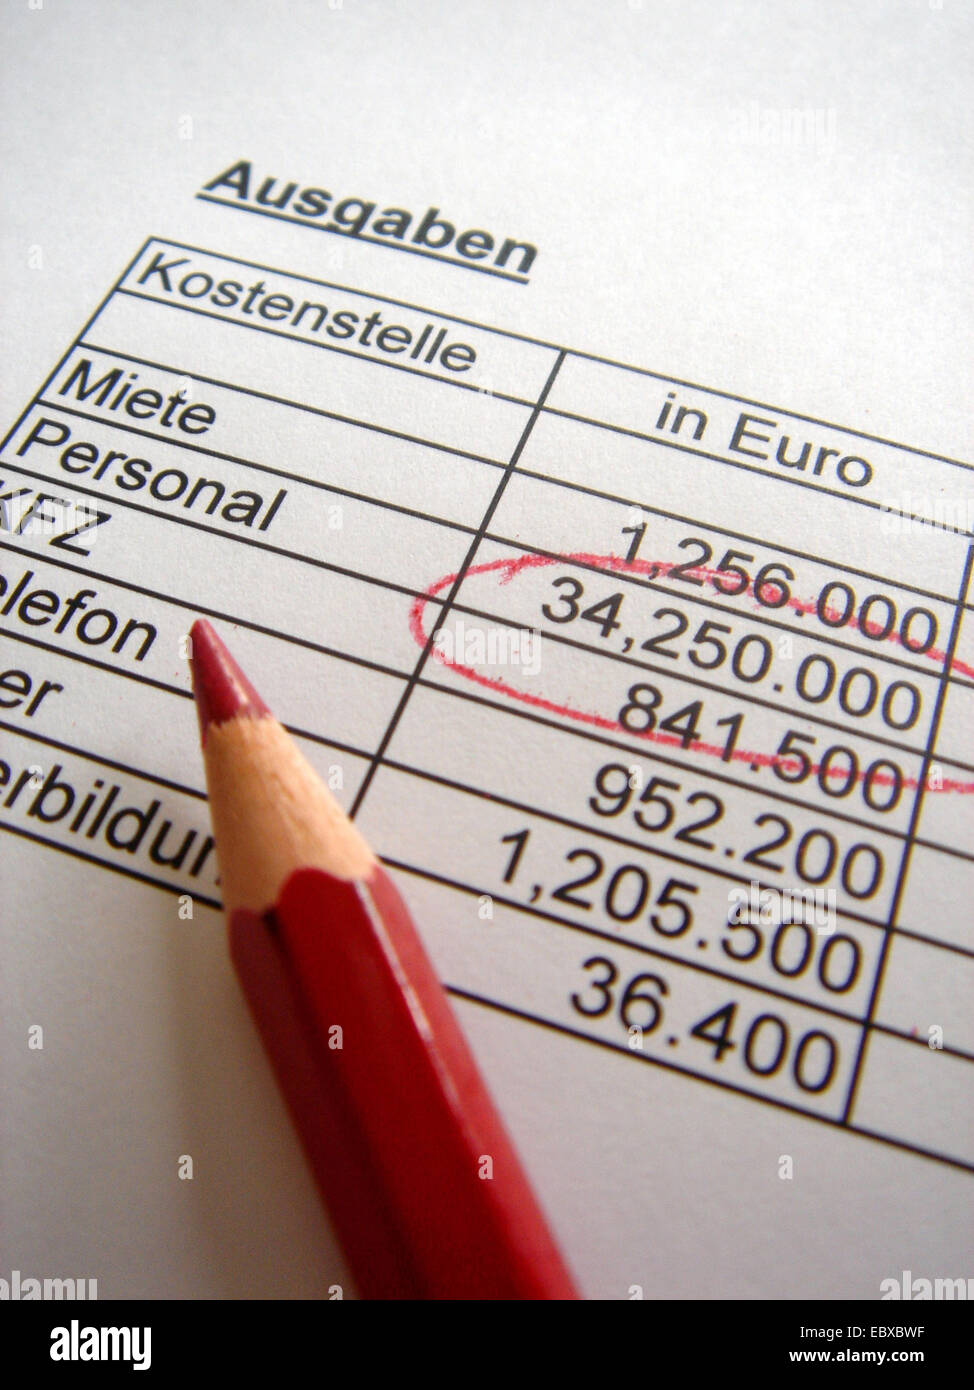 Los costos de personal marcado con lápiz rojo en un balance de gastos de empresa Foto de stock